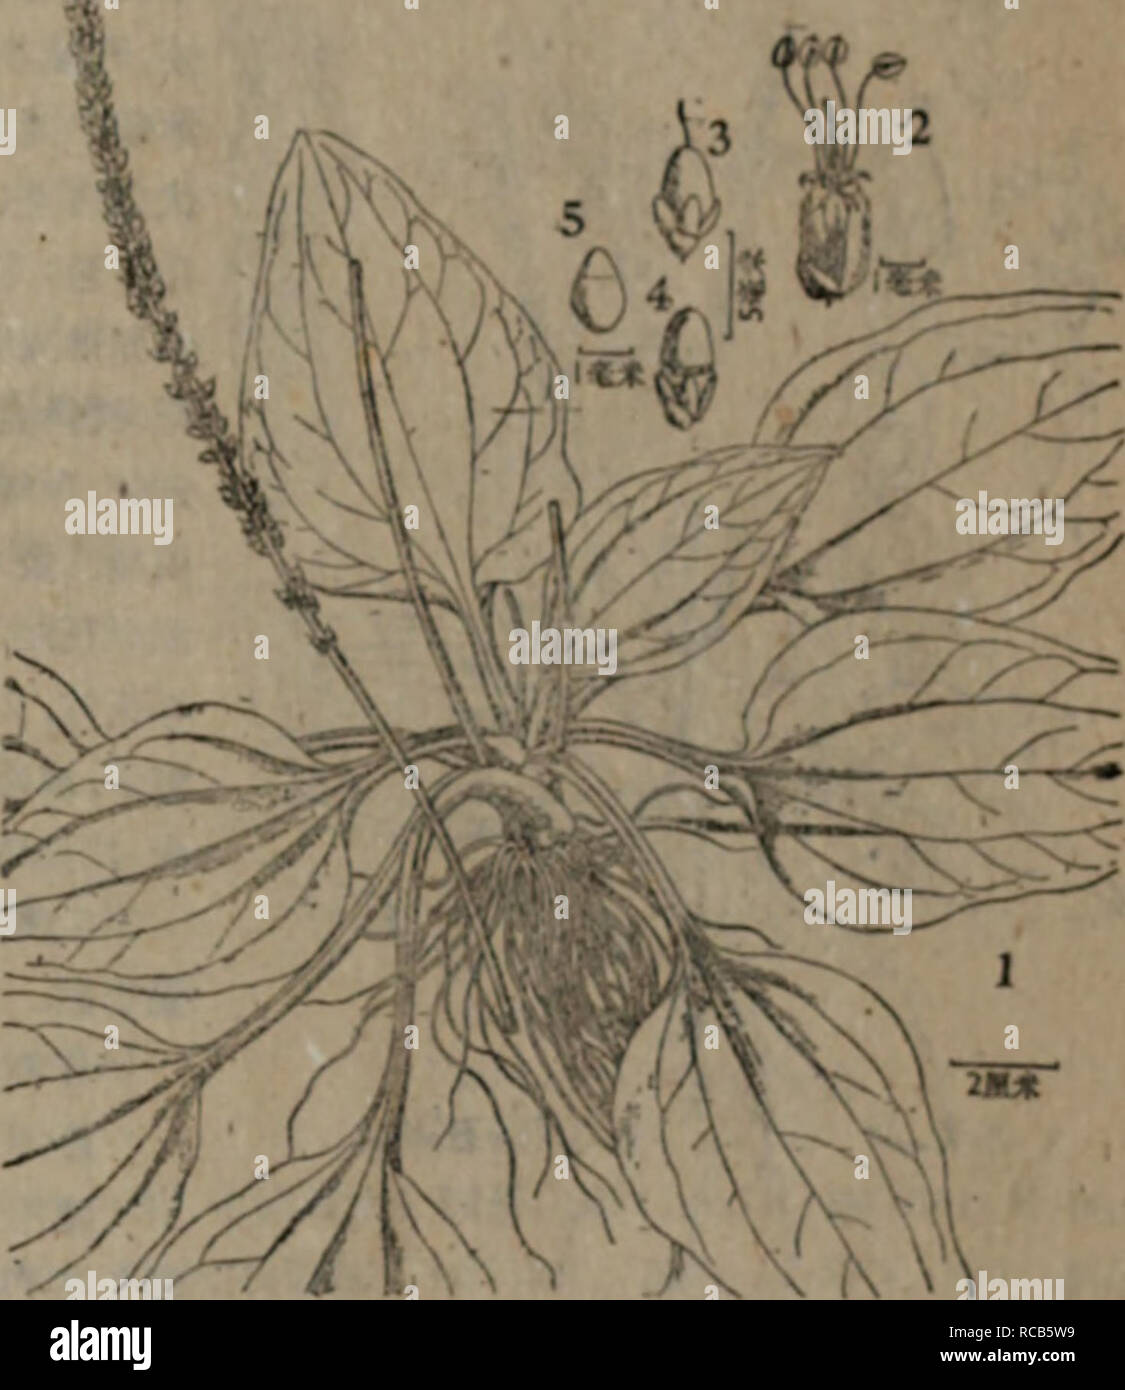 . dong bei yao yong zhi wu zhi. Botany. L. var. aaiatiea Decaisne in DC. Prodr. XII, I (1852 ) 694. Plantago ko,lifolia Nakai et Kitag. in Rep. First Sci. Exped. Manch. sect. 4, I (1934 ) 55, tab. 16ï¼ KiUg. 1. c.(1939) -!G2. Plantago asiatica L. var. magtta Kitag. 1. c. (1939) 402. å¤å¹´çé©æ¬ãæå®½*sèED?,ä¸æa,å ¶ä¸èçå¤æ¸HÂ«,ç¹-æå¹¾.å ¨é¨SÂ«çï¼å ·ãèç²å£¯çå æ,||^^ä¸Â£1ææ§½,è³´å°é¢æåä¸å±é,å»£åå½¢3Â«Â«|åçå¼å½¢,Â«Â«^å¨å §é·8â20Â»Â«[ç±³ï¼ææ°´liftå° è æ´å¤§,å ãéé -æç¨éå°,^!6Â«[Â»^^!l!r.æHustagin, Hydeln. Hujlidin. Hdouirã æè¬¹&quot;:'&gt;ä¸å¤«å ±i^!':'-&quot;;' V ï¼ 'ä¸'ï¼Â»dcÂ«WB,å¯å»*çç©/iuitÂ«mÂ«. Stock Photo